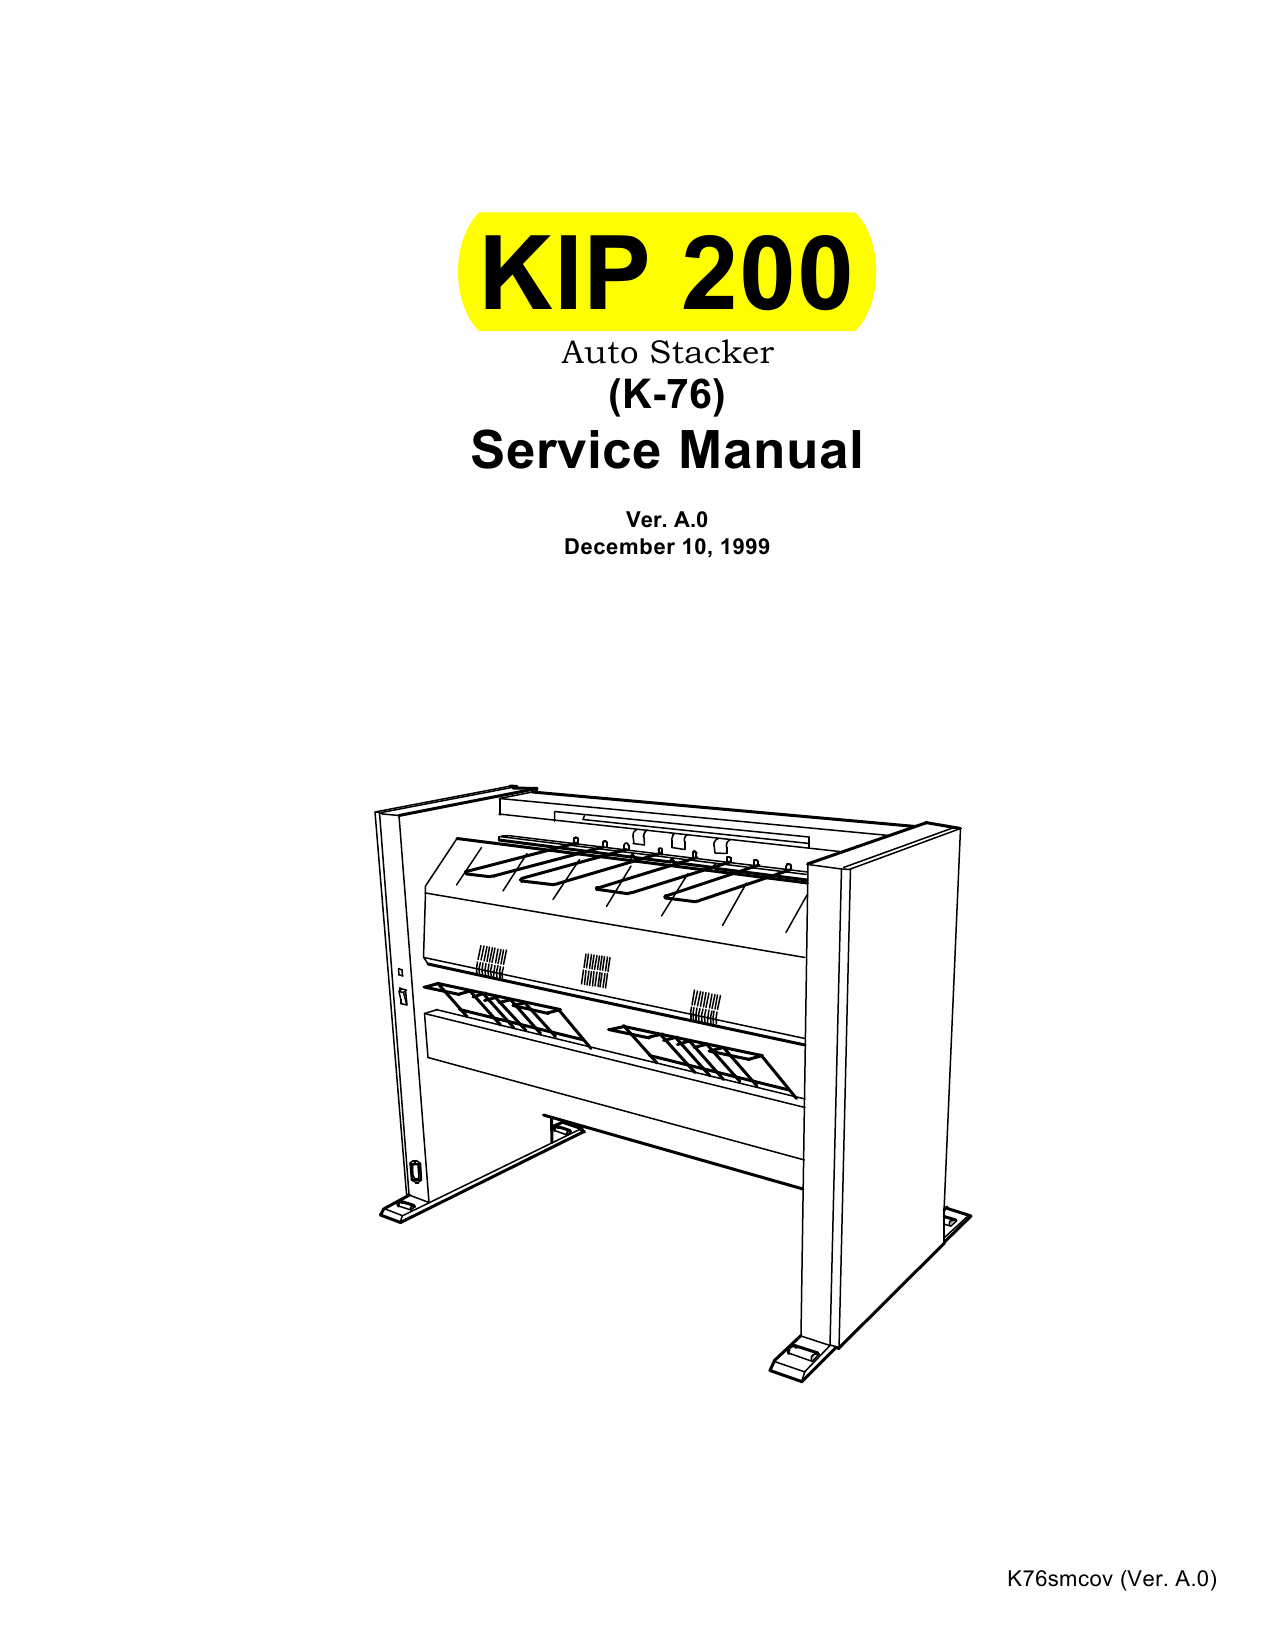 KIP 200 K-76 Parts and Service Manual-1